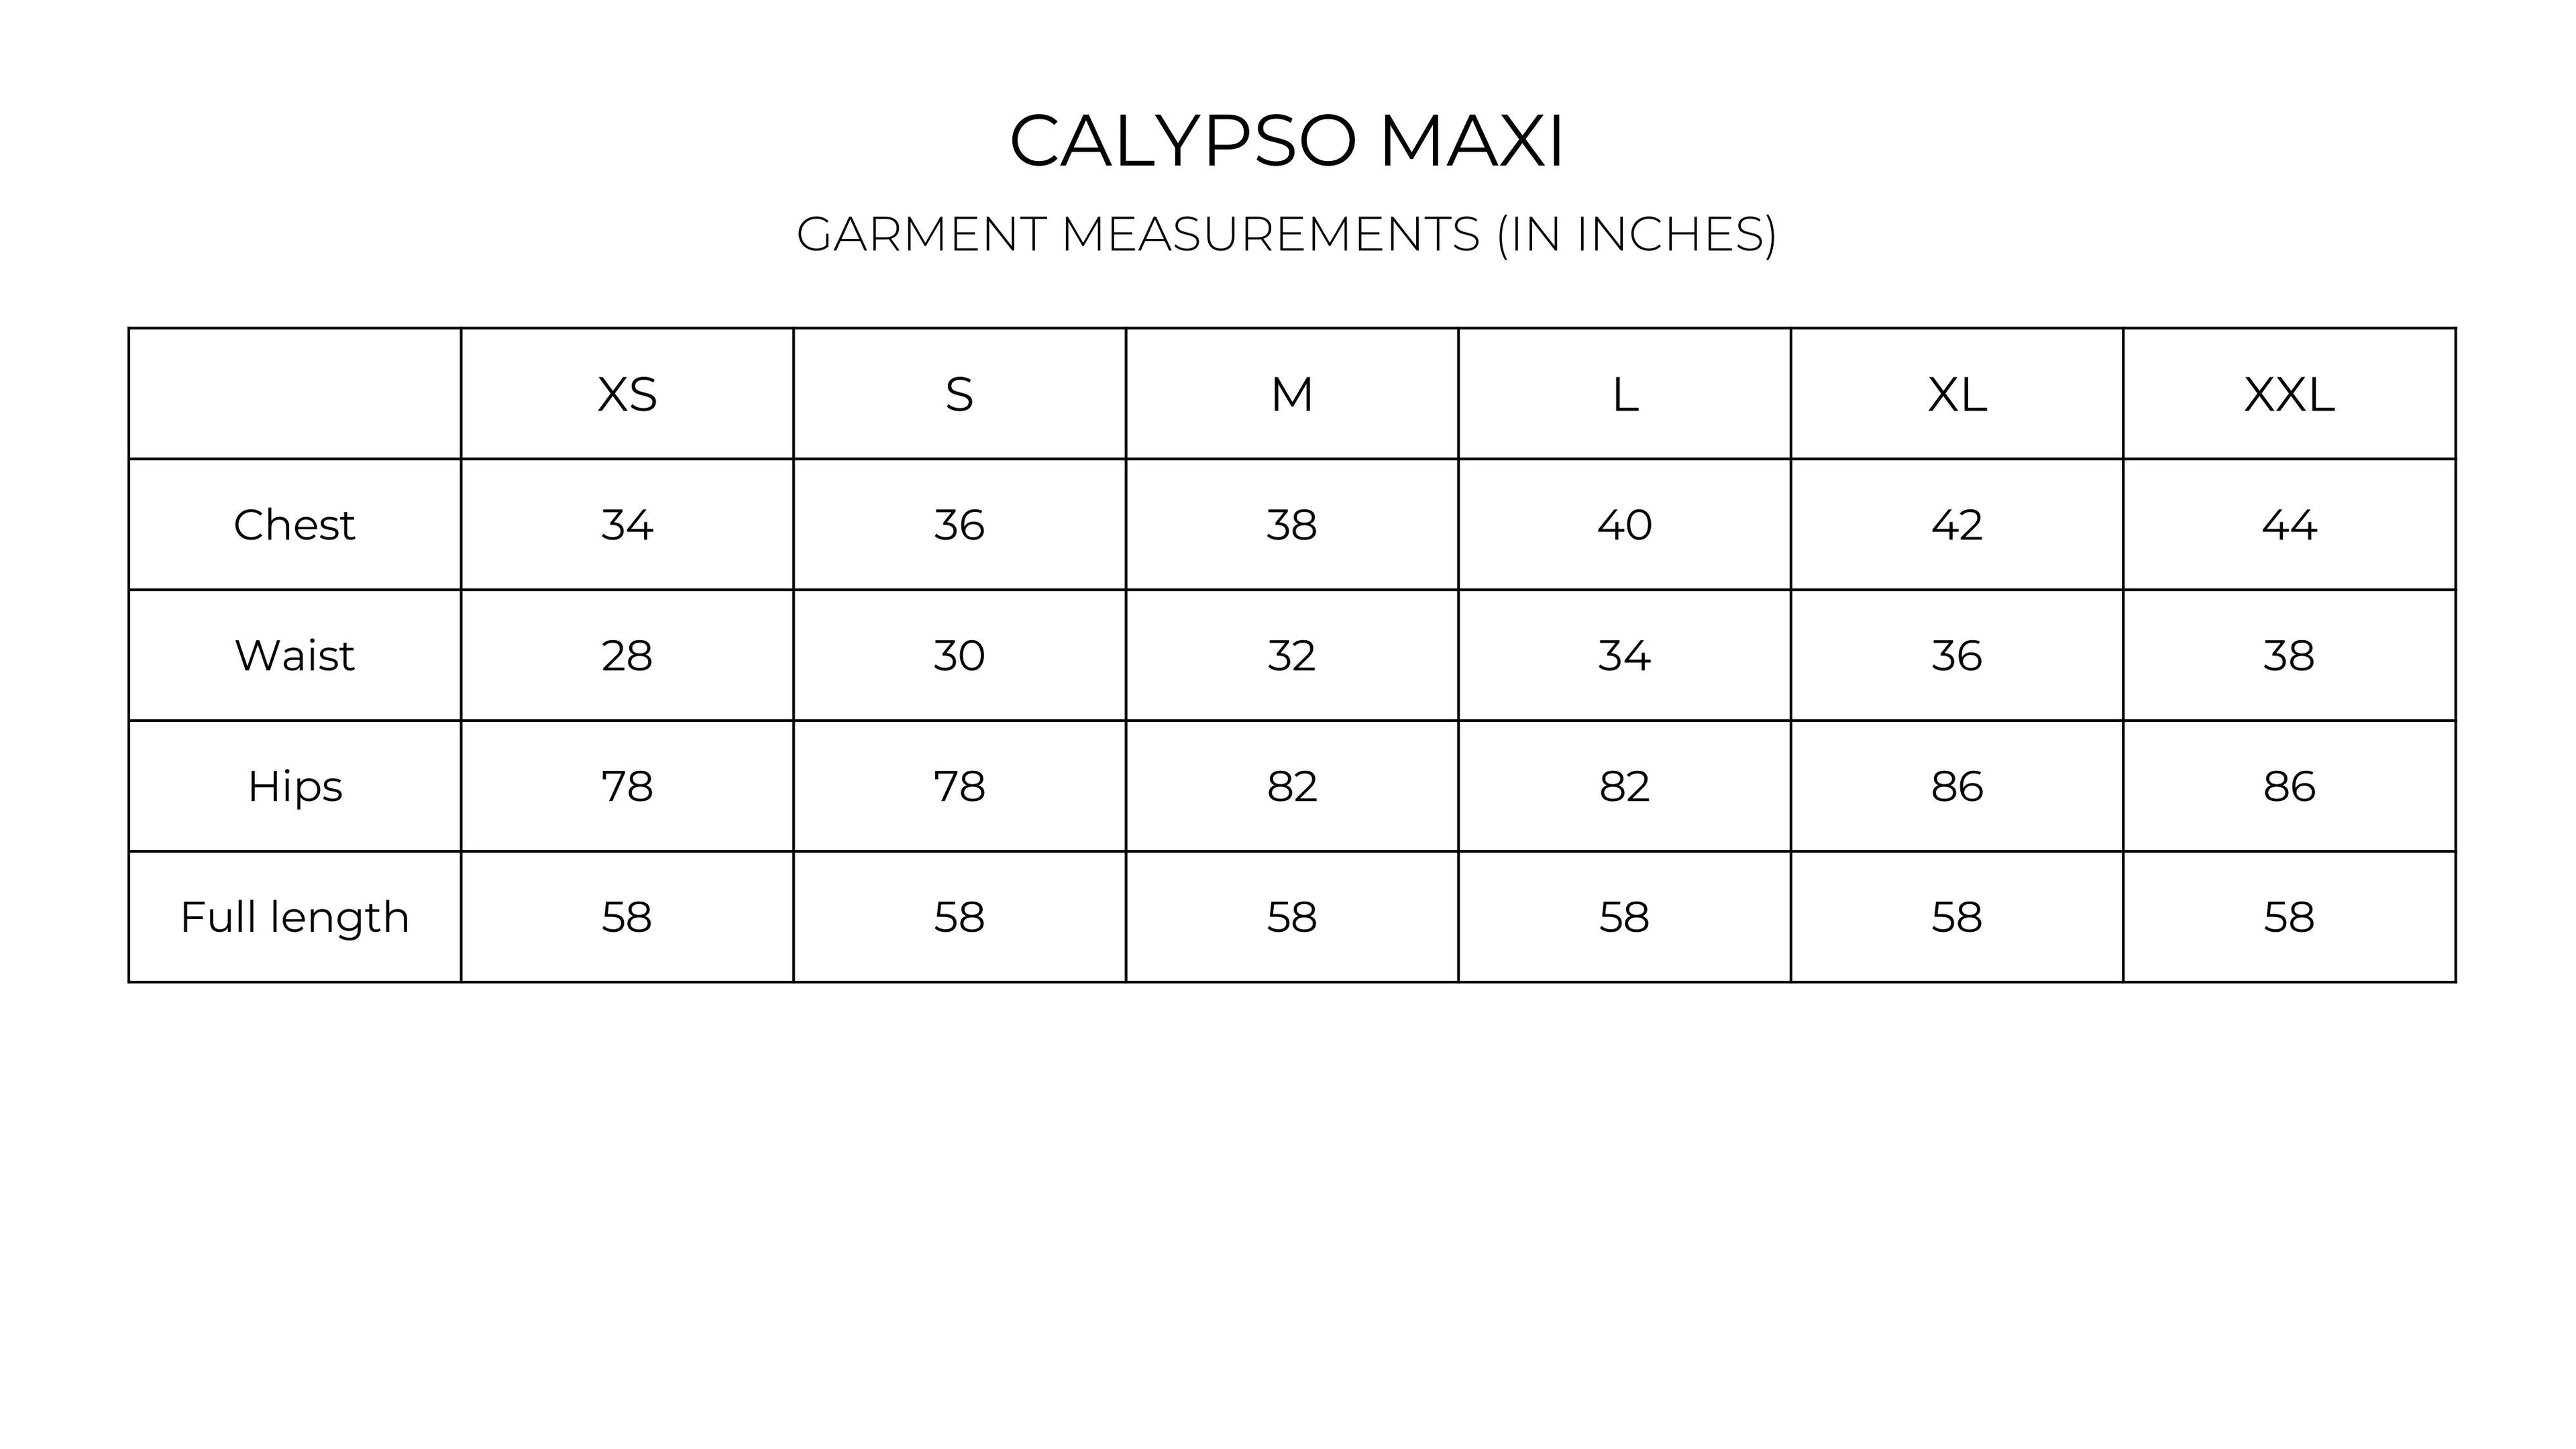 Calypso Maxi